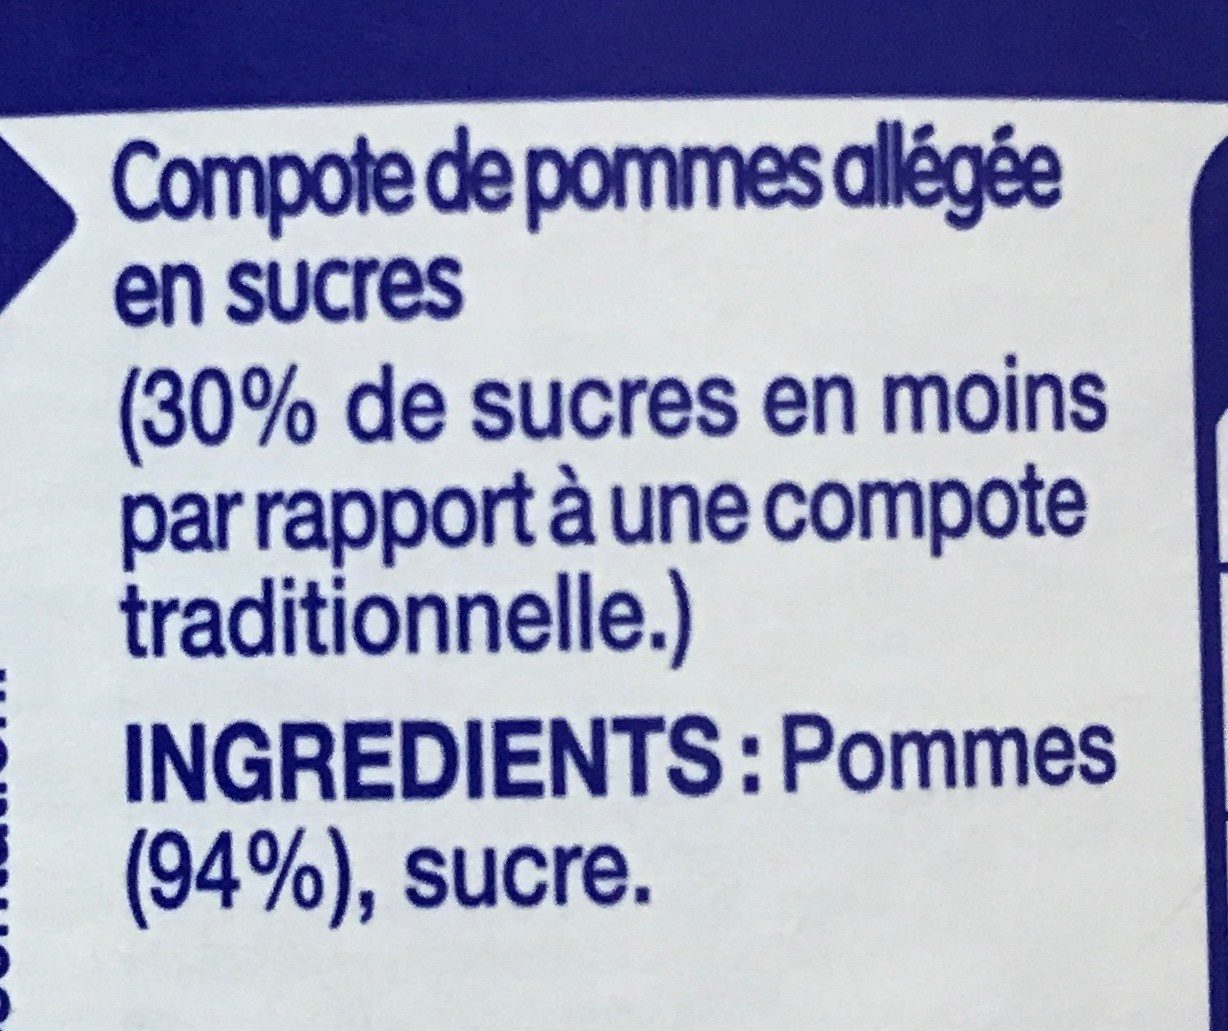 Compote de pommes allégée en sucres - Ingredients - fr